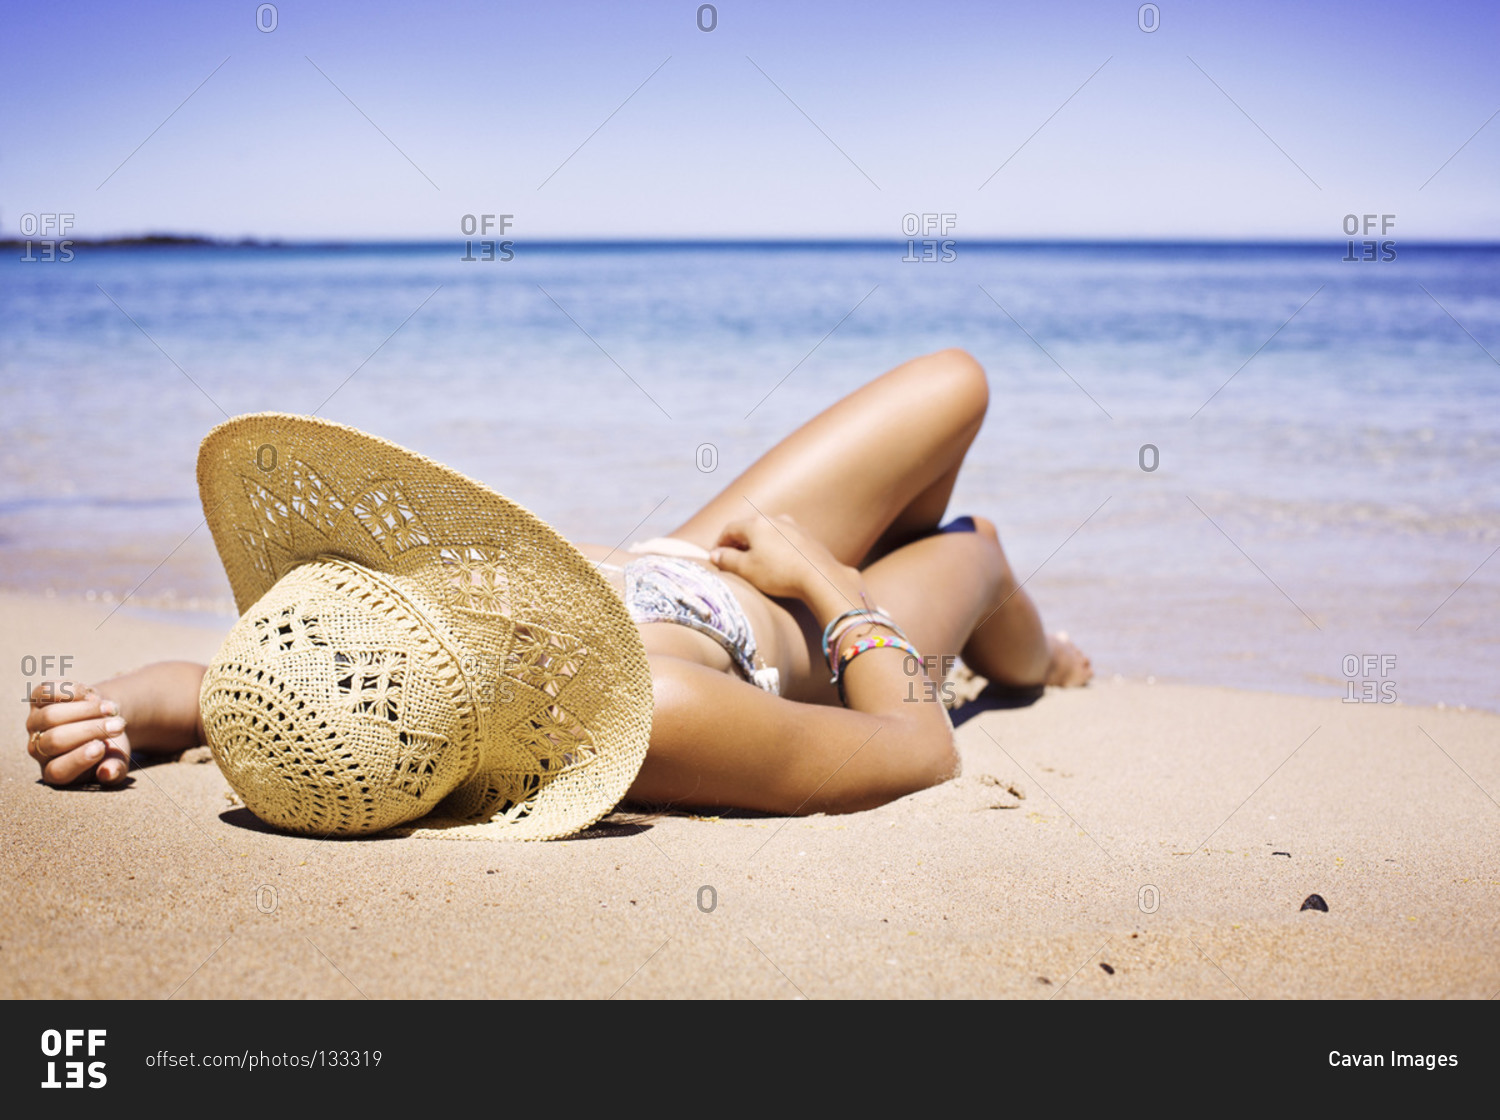 Woman sun-bathing on beach